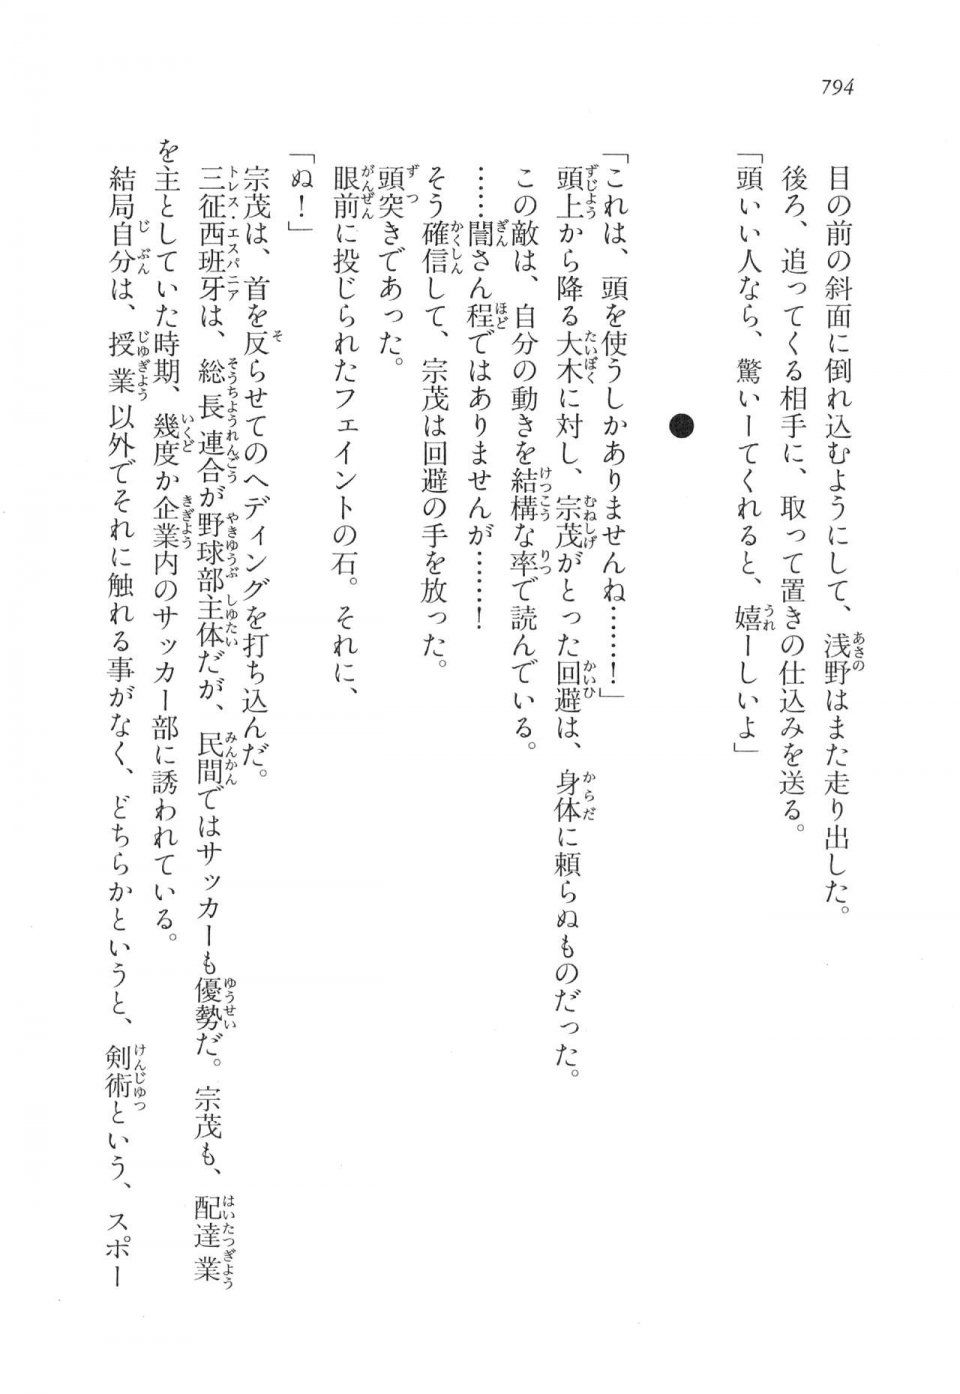 Kyoukai Senjou no Horizon LN Vol 17(7B) - Photo #796